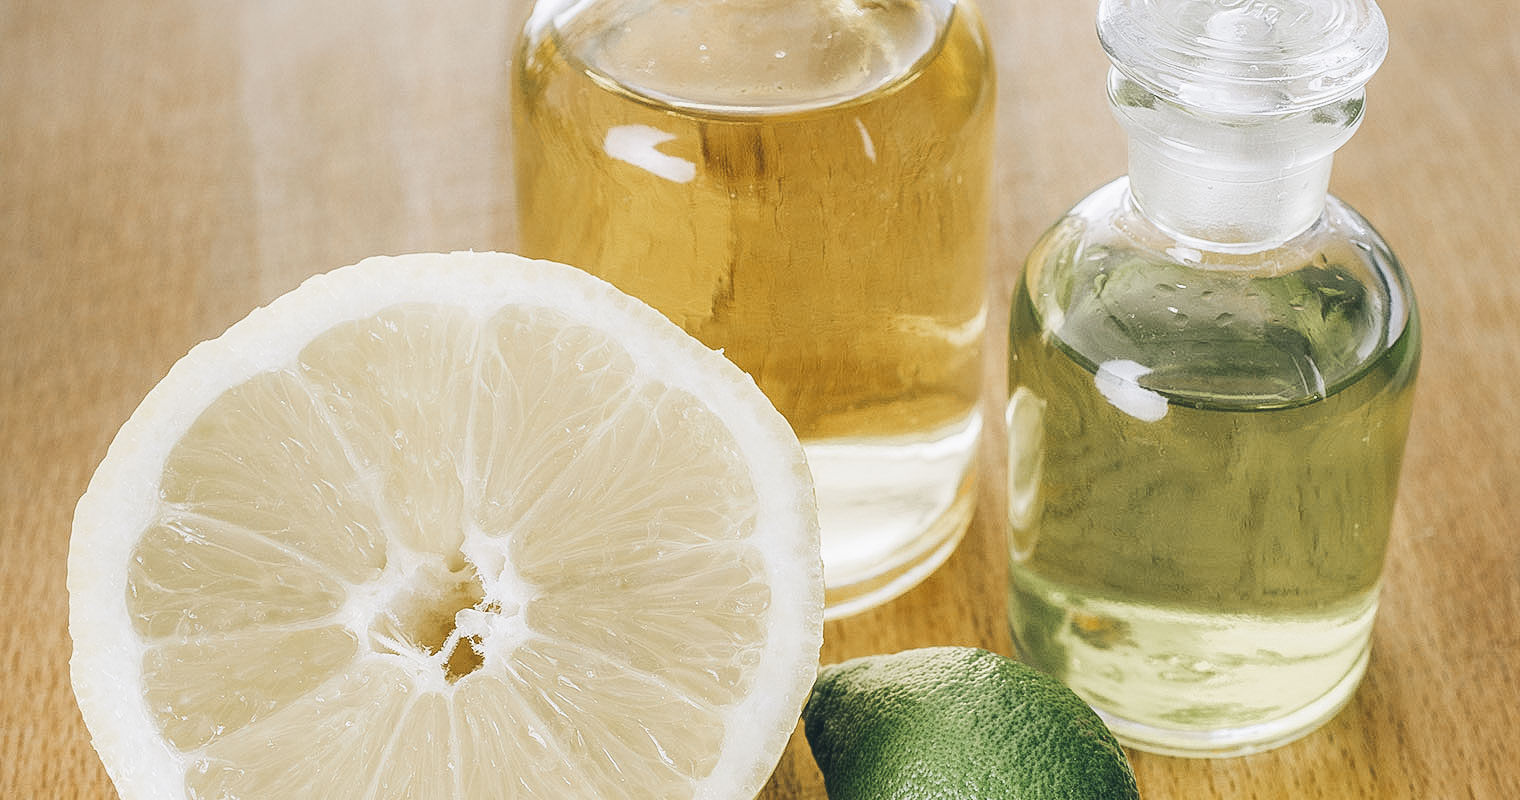 Cut open Lemon with bottle of Lemon juice and Lemon essential oil